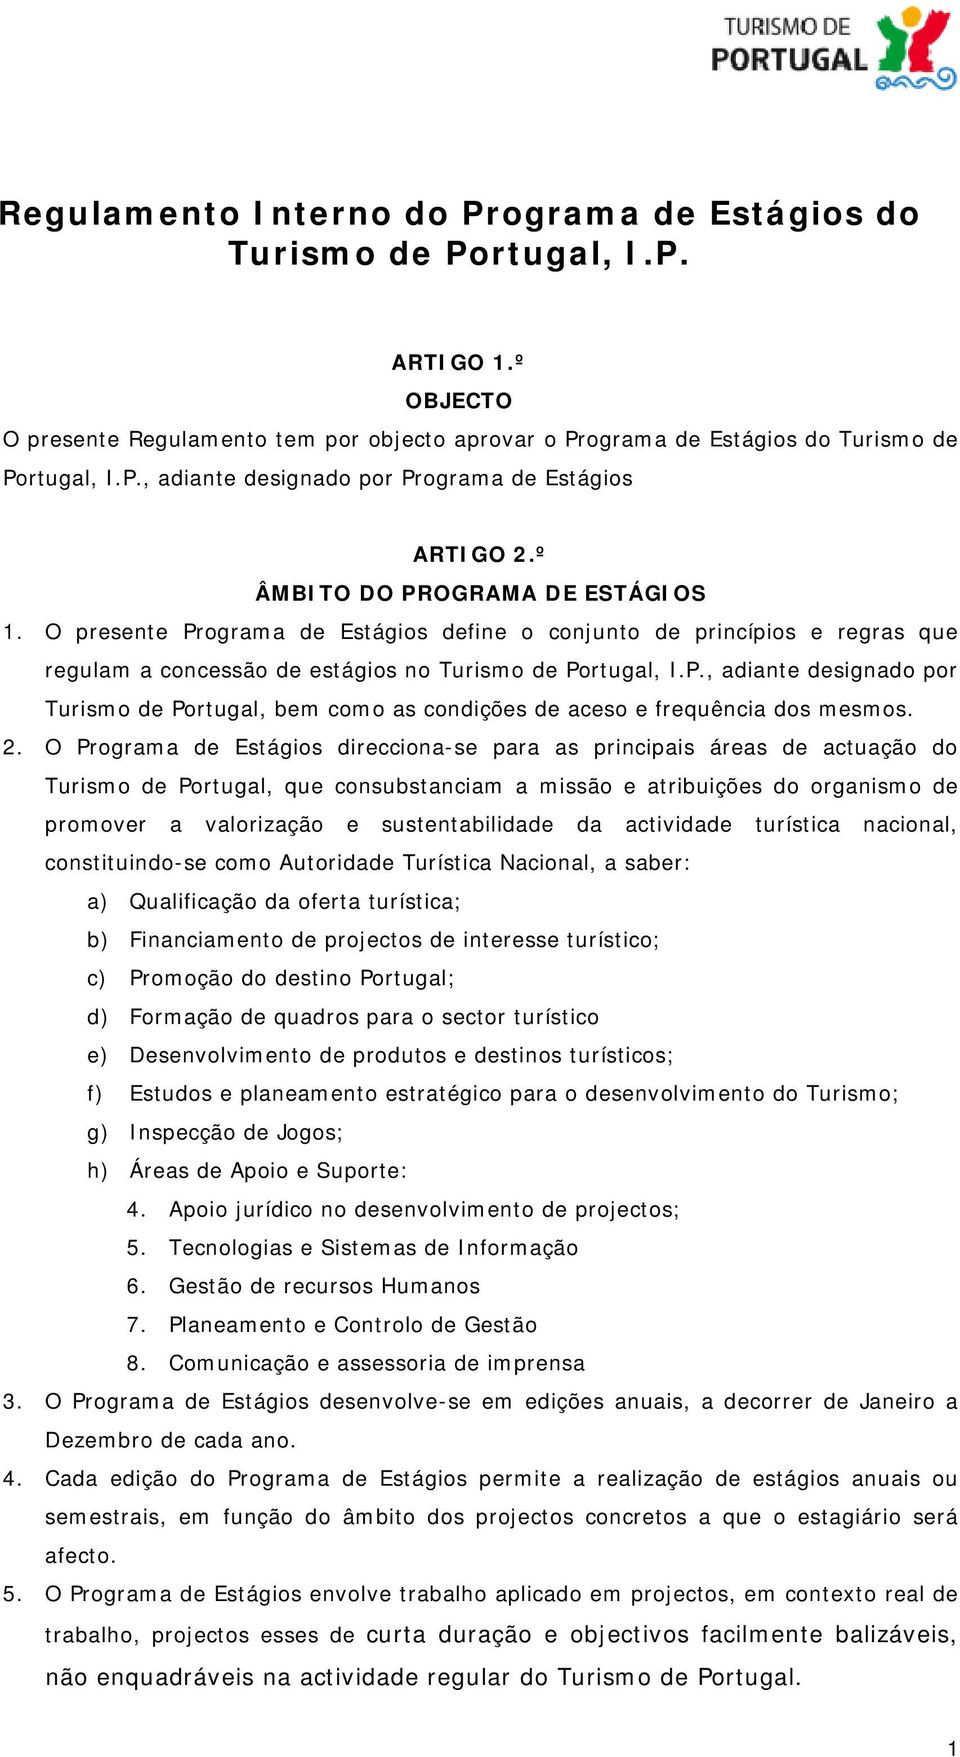 2. O Programa de Estágios direcciona-se para as principais áreas de actuação do Turismo de Portugal, que consubstanciam a missão e atribuições do organismo de promover a valorização e